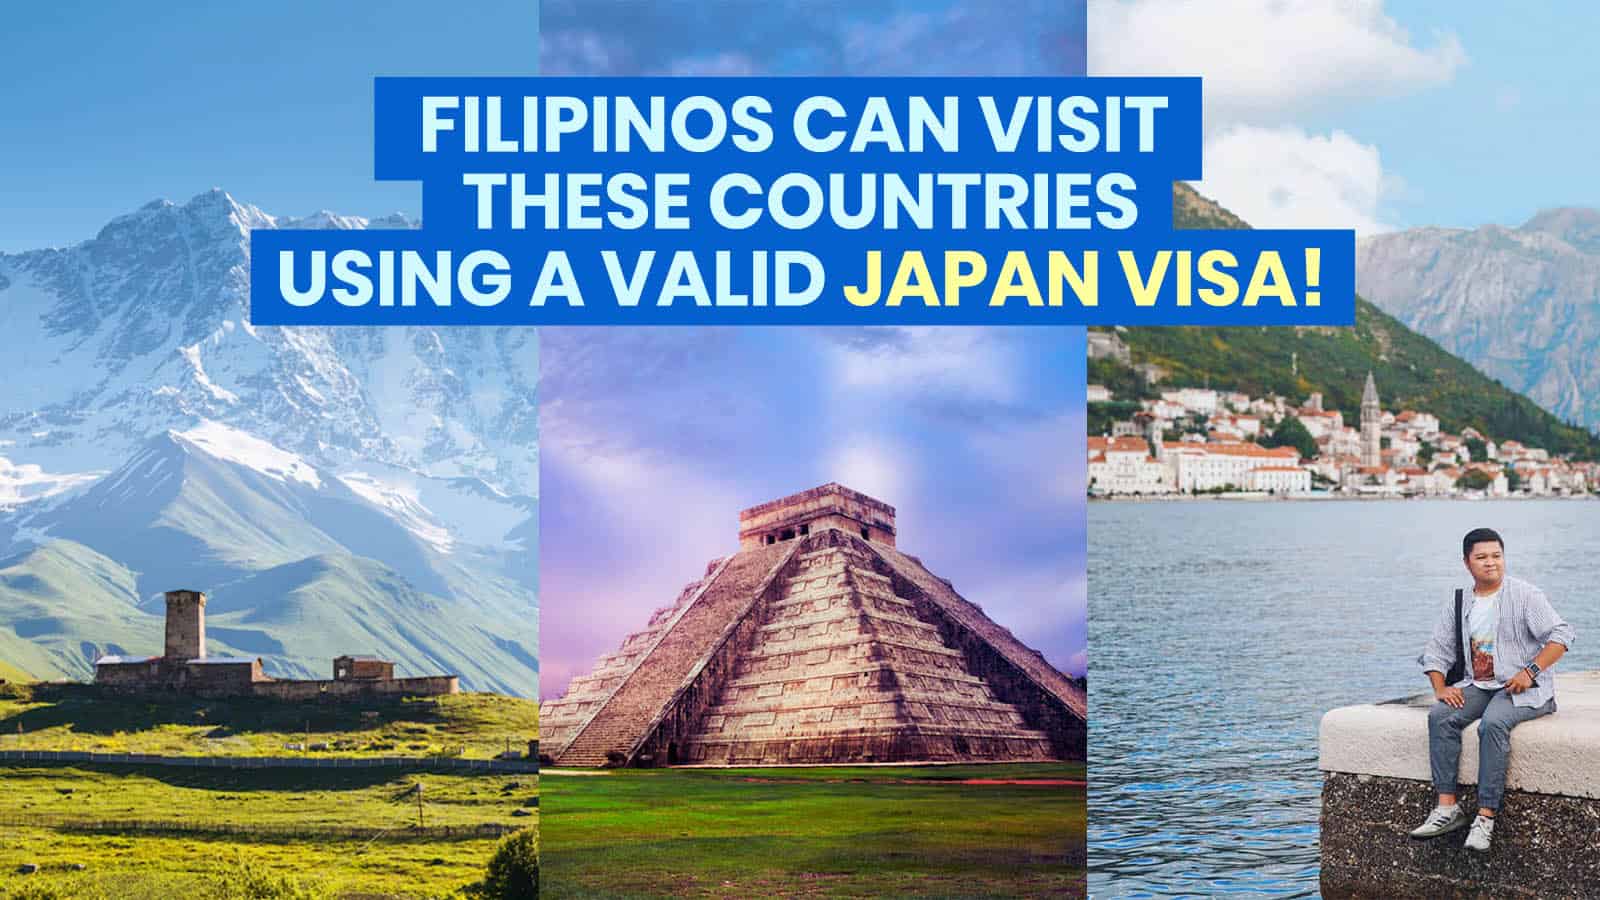 菲律宾人可以用日本签证访问的3个国家